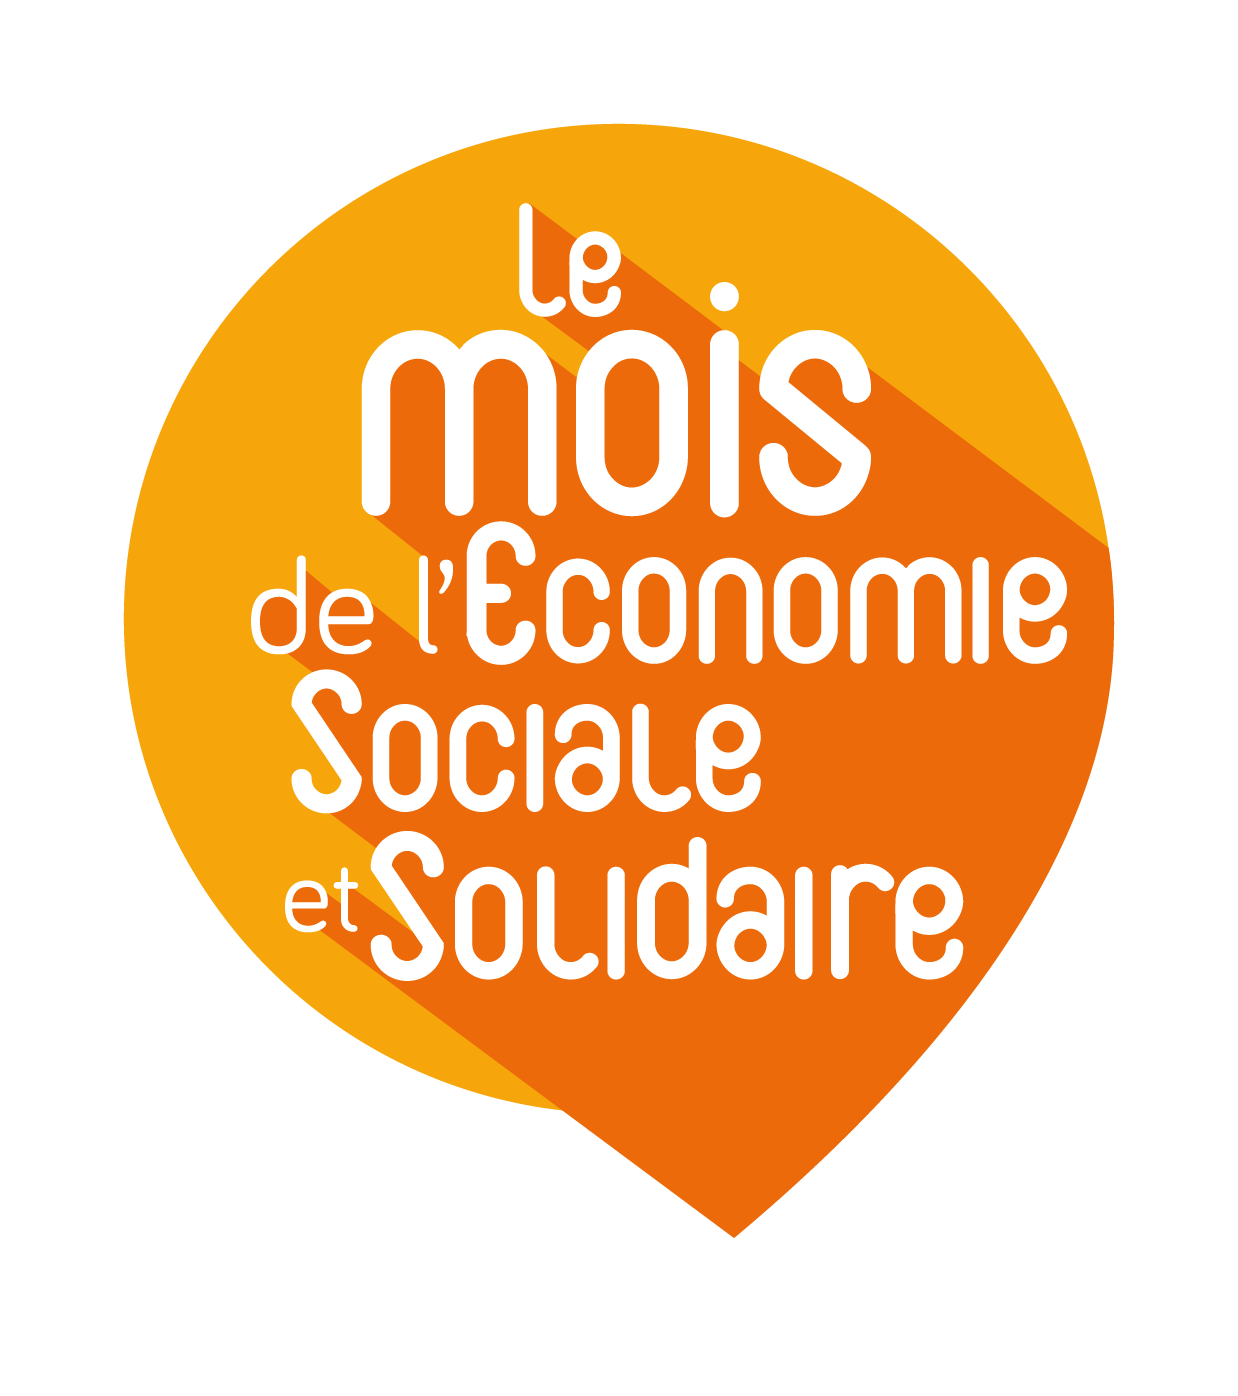 You are currently viewing Programme du Mois de l’Economie Sociale et Solidaire